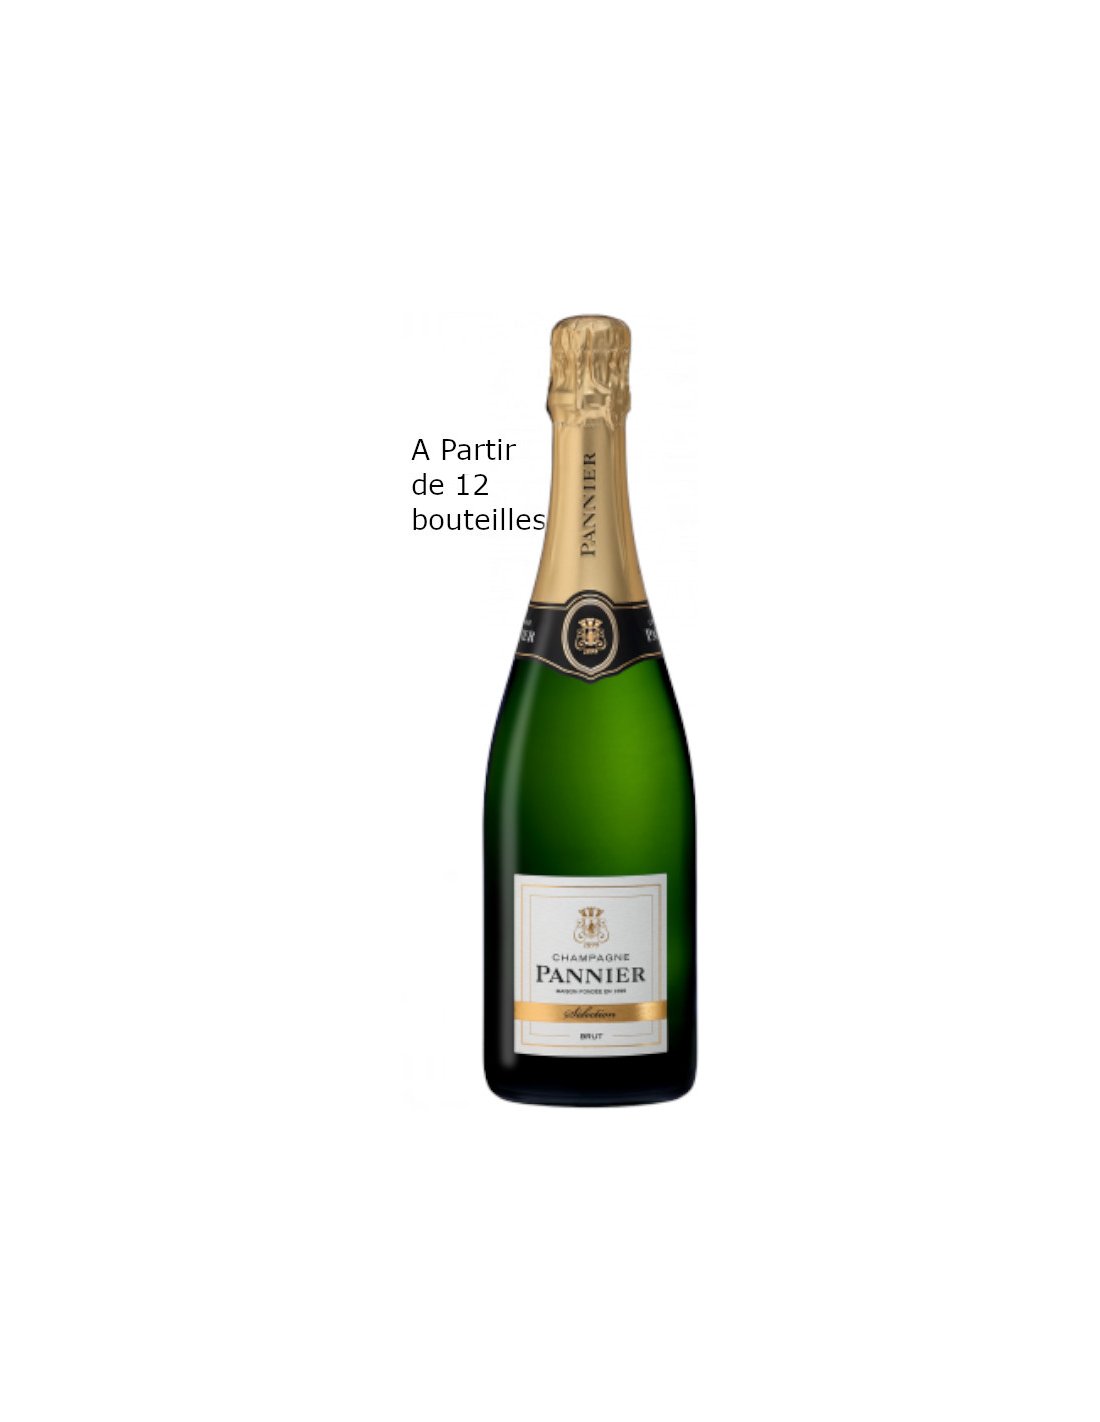 https://ed-champ.fr/1699-thickbox_default/champagne-pannier-brut-selection-par-carton-12-bouteilles.jpg